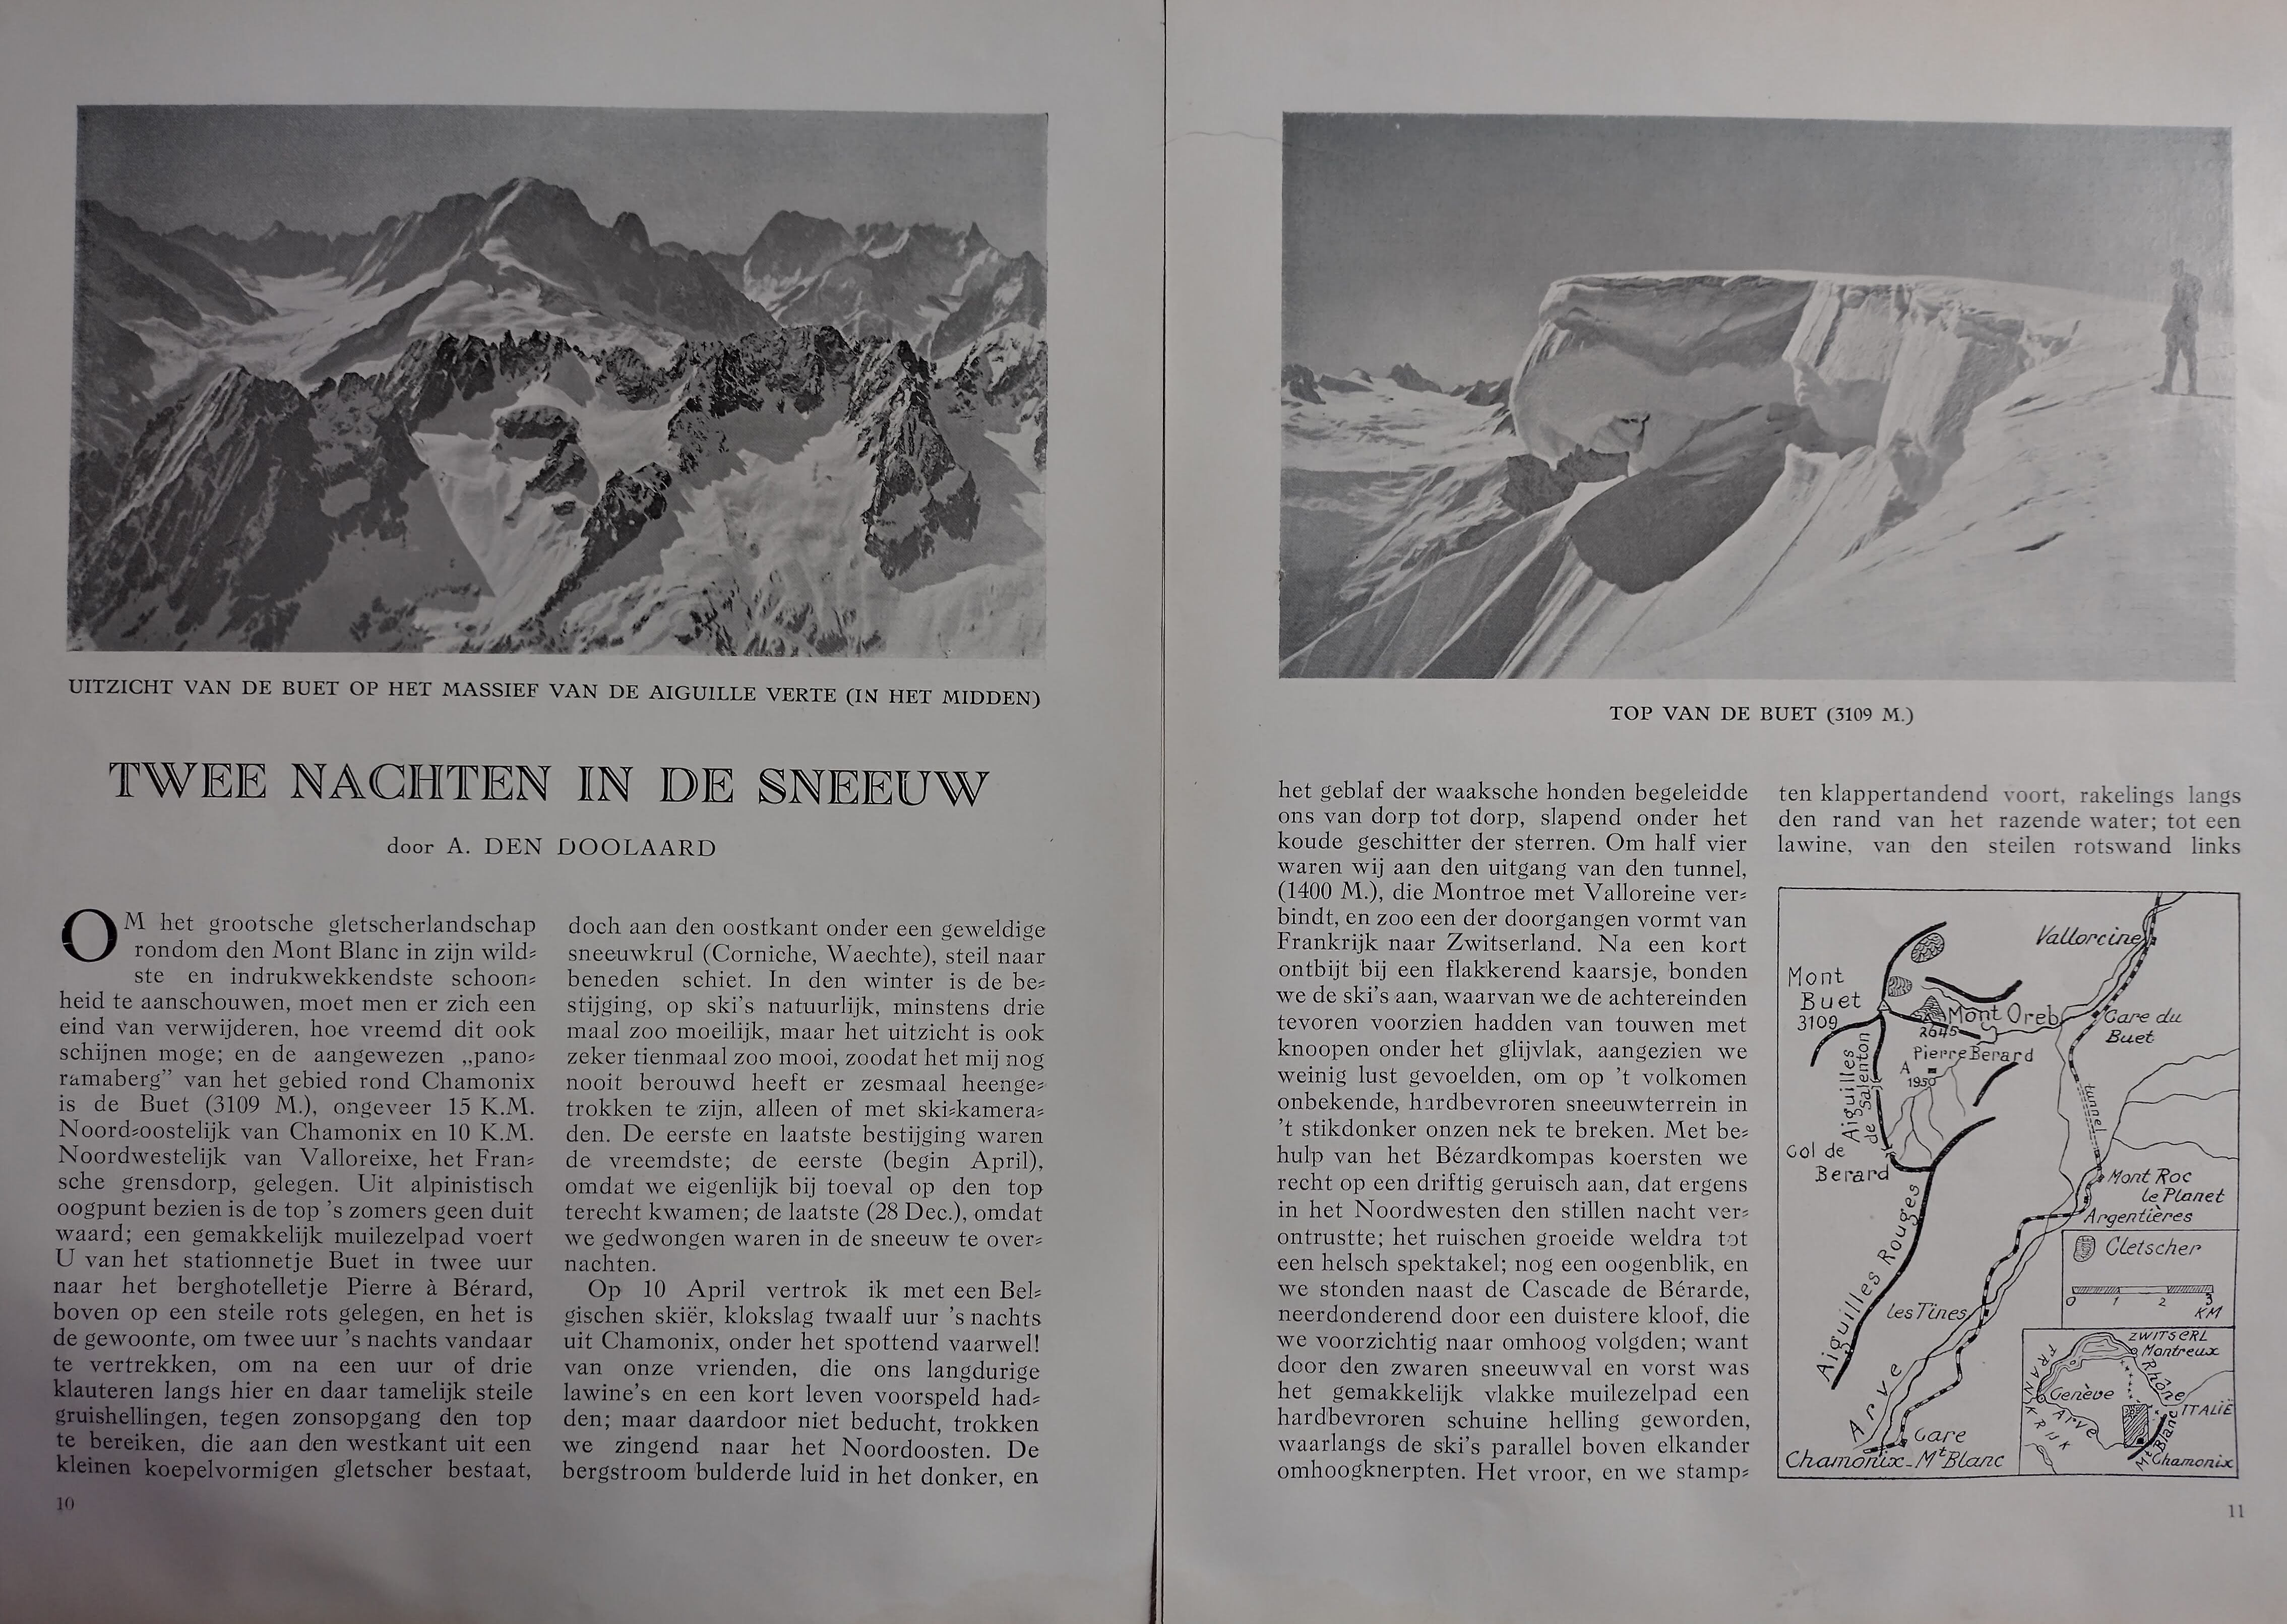 Eerste twee pagina's van het artikel Twee nachten in de sneeuw van A. den Doolaard, geïllustreerd met foto's van besneeuwde bergen en een overzichtskaartje.